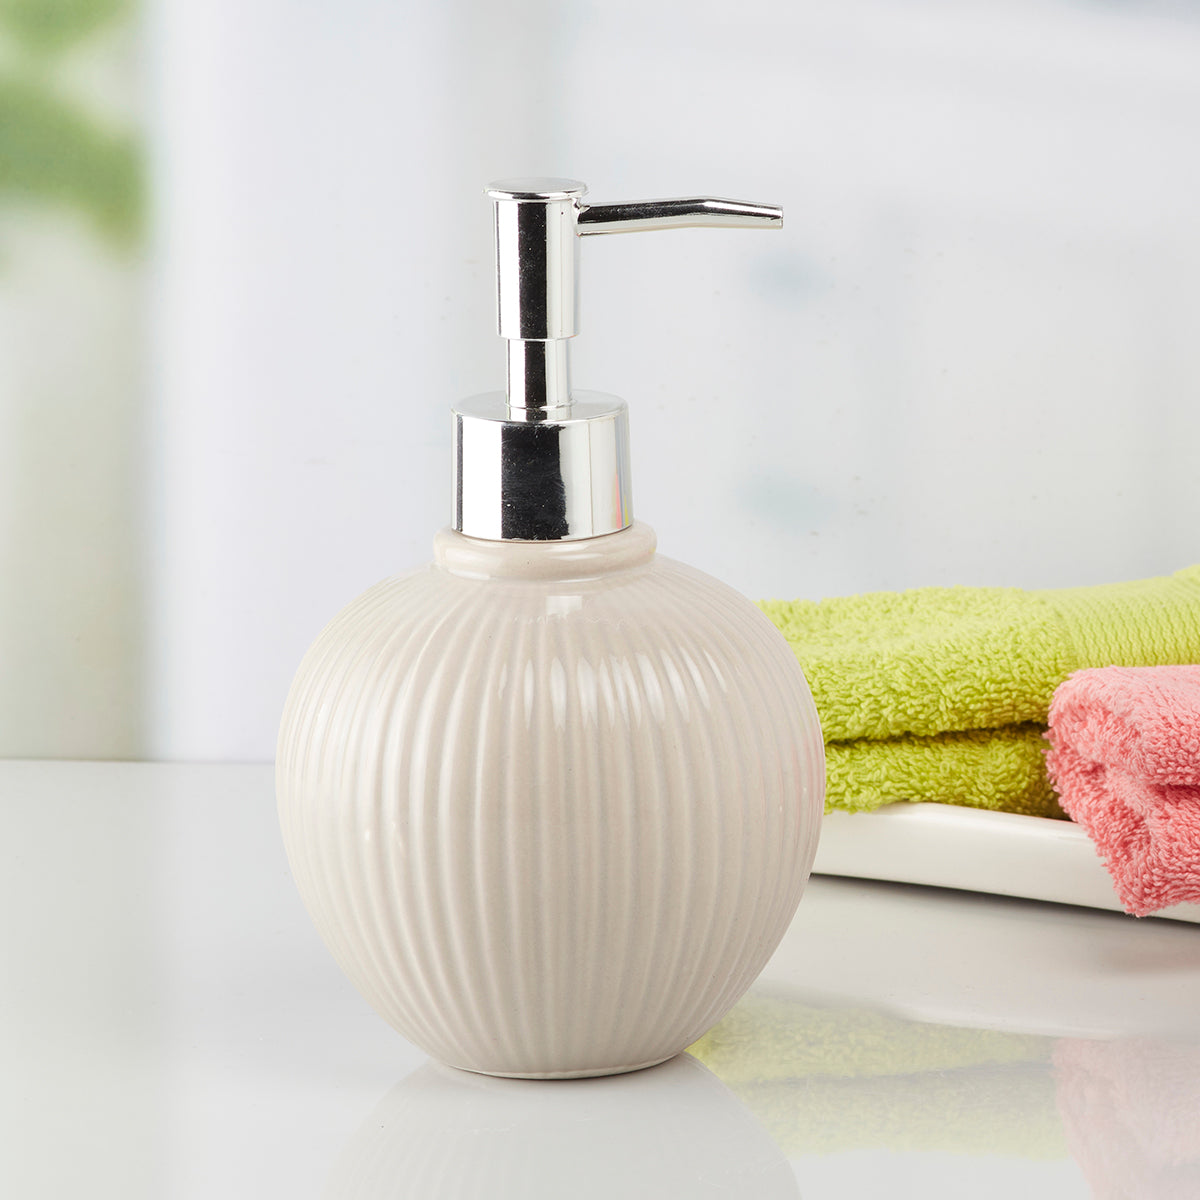 Kookee Ceramic Soap Dispenser for Bathroom handwash, refillable pump bottle for Kitchen hand wash basin, Set of 1, Beige (8050)